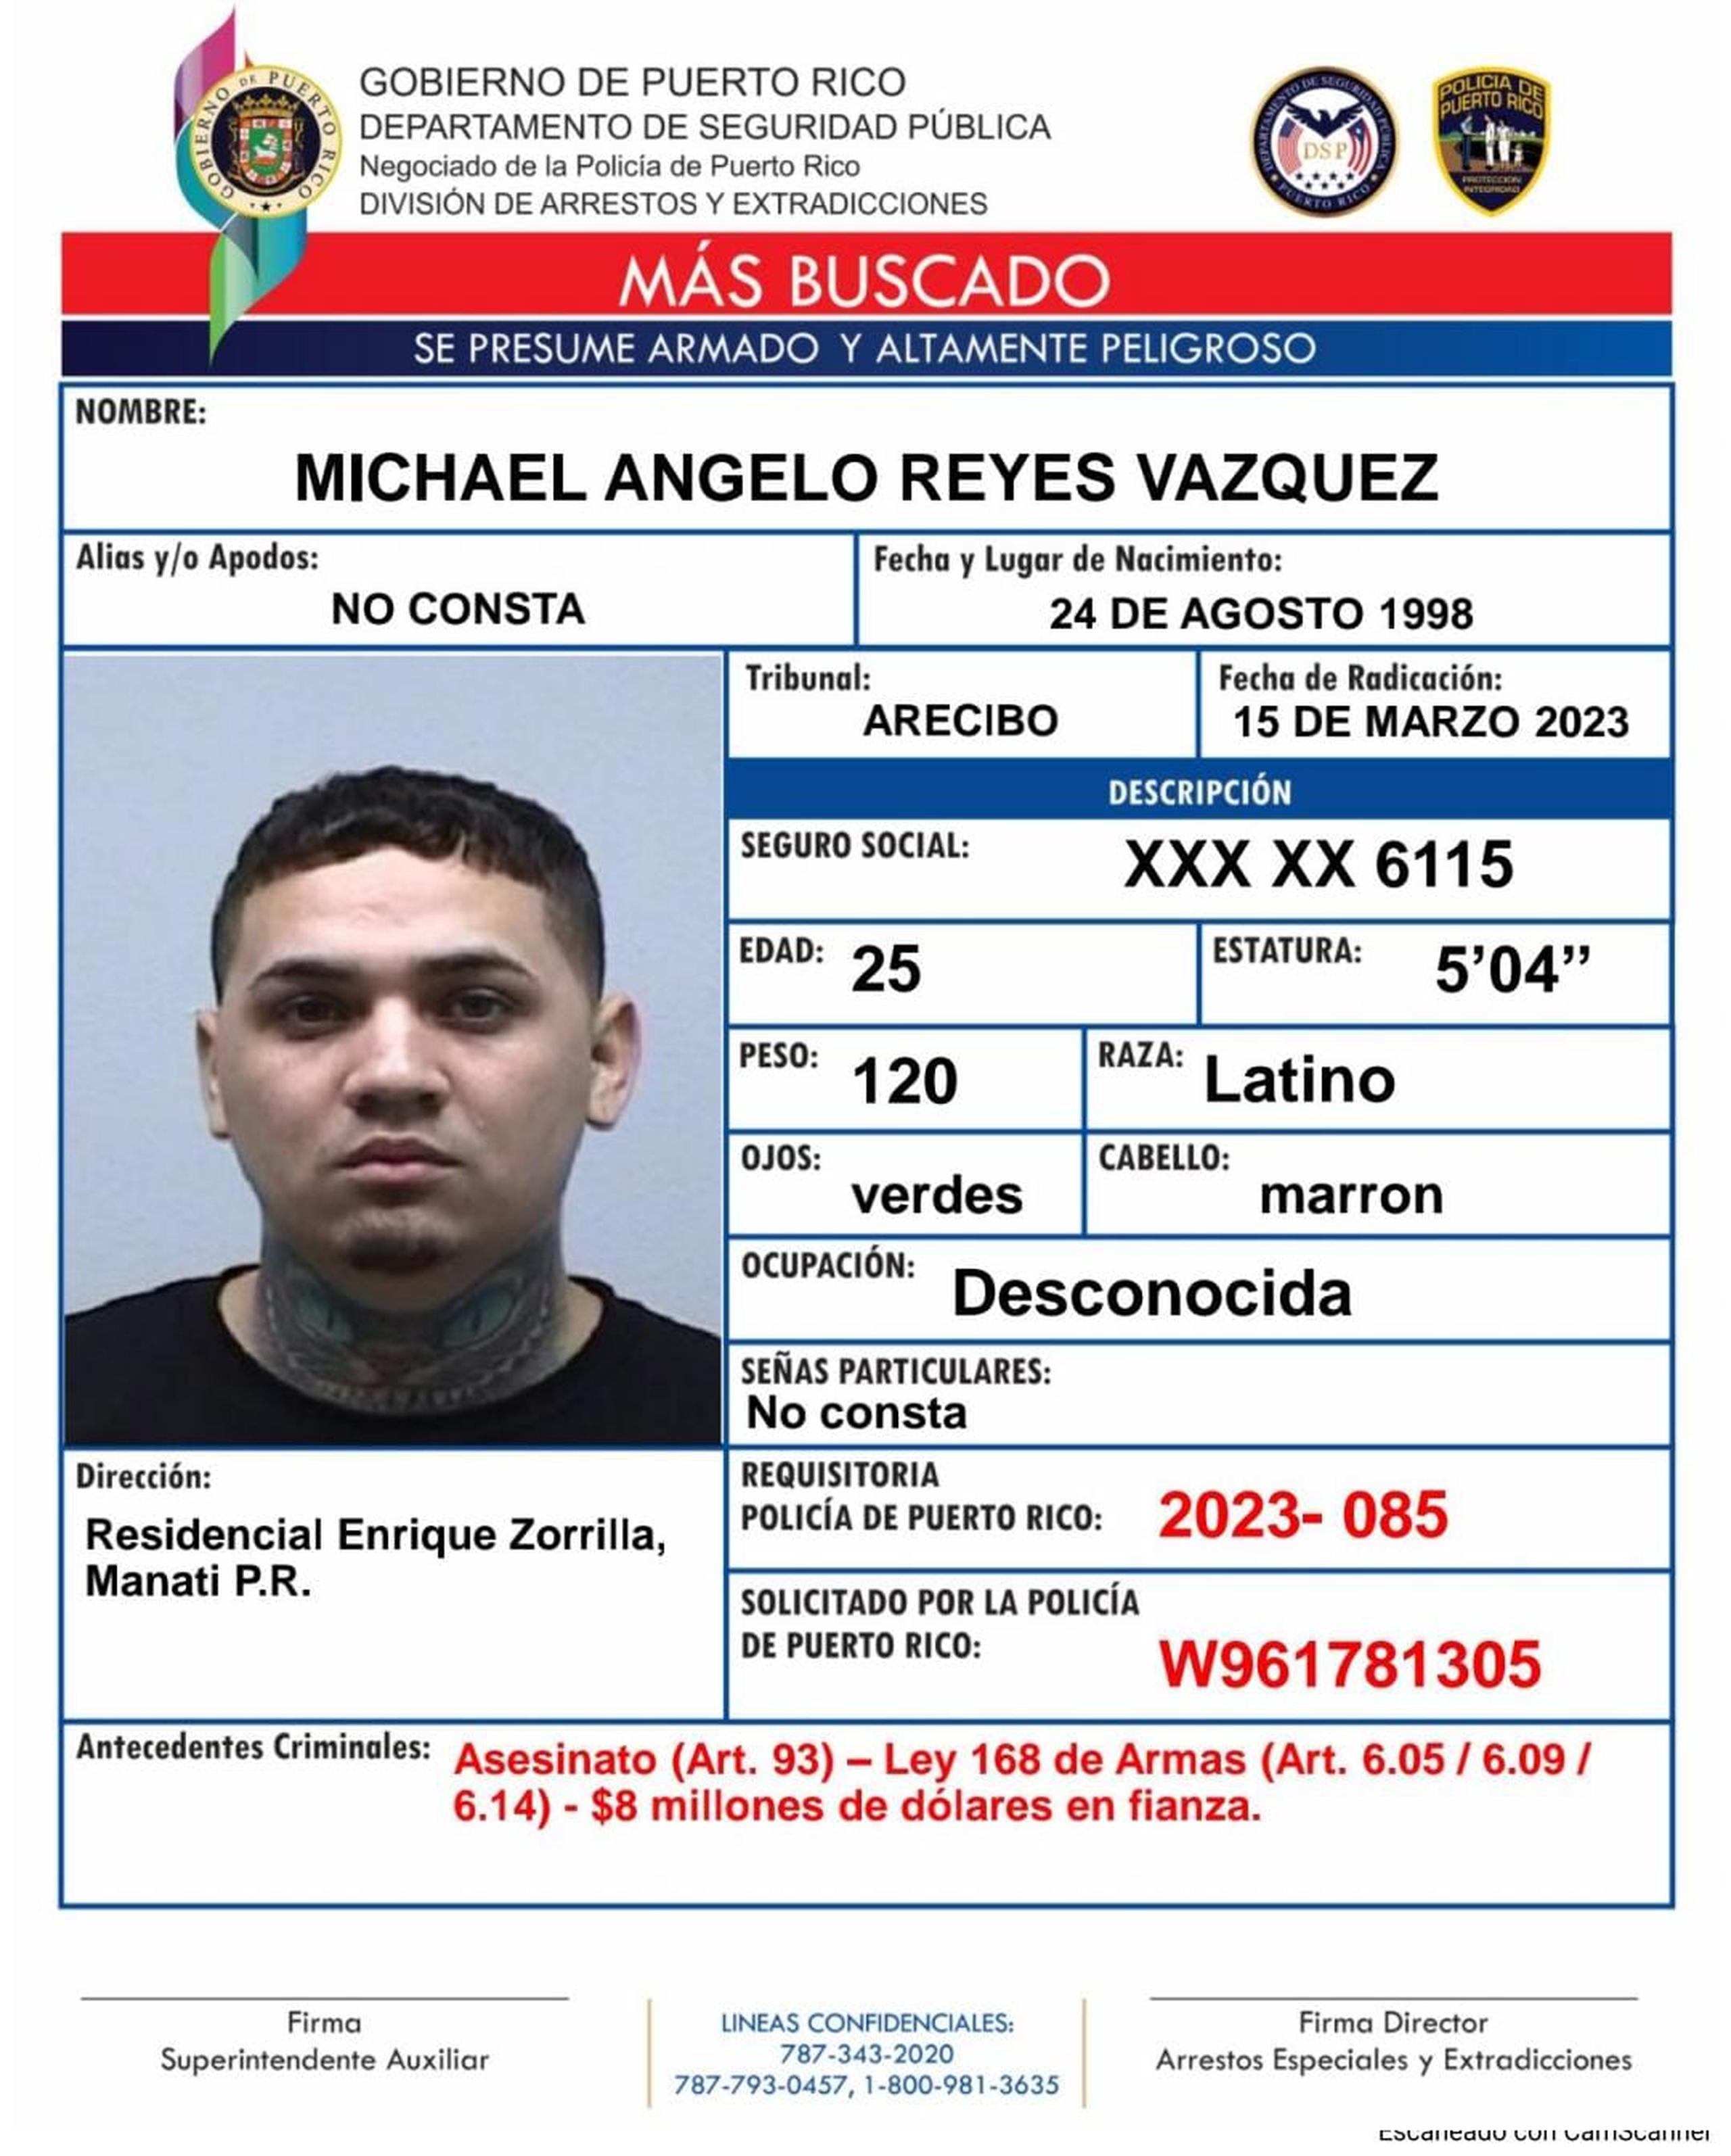 Contra Michael Ángelo Reyes Vázquez, de 24 años, miembro de la ganga de "Hasta los Marcian", pesa una orden de arresto con una fianza de $8 millones.